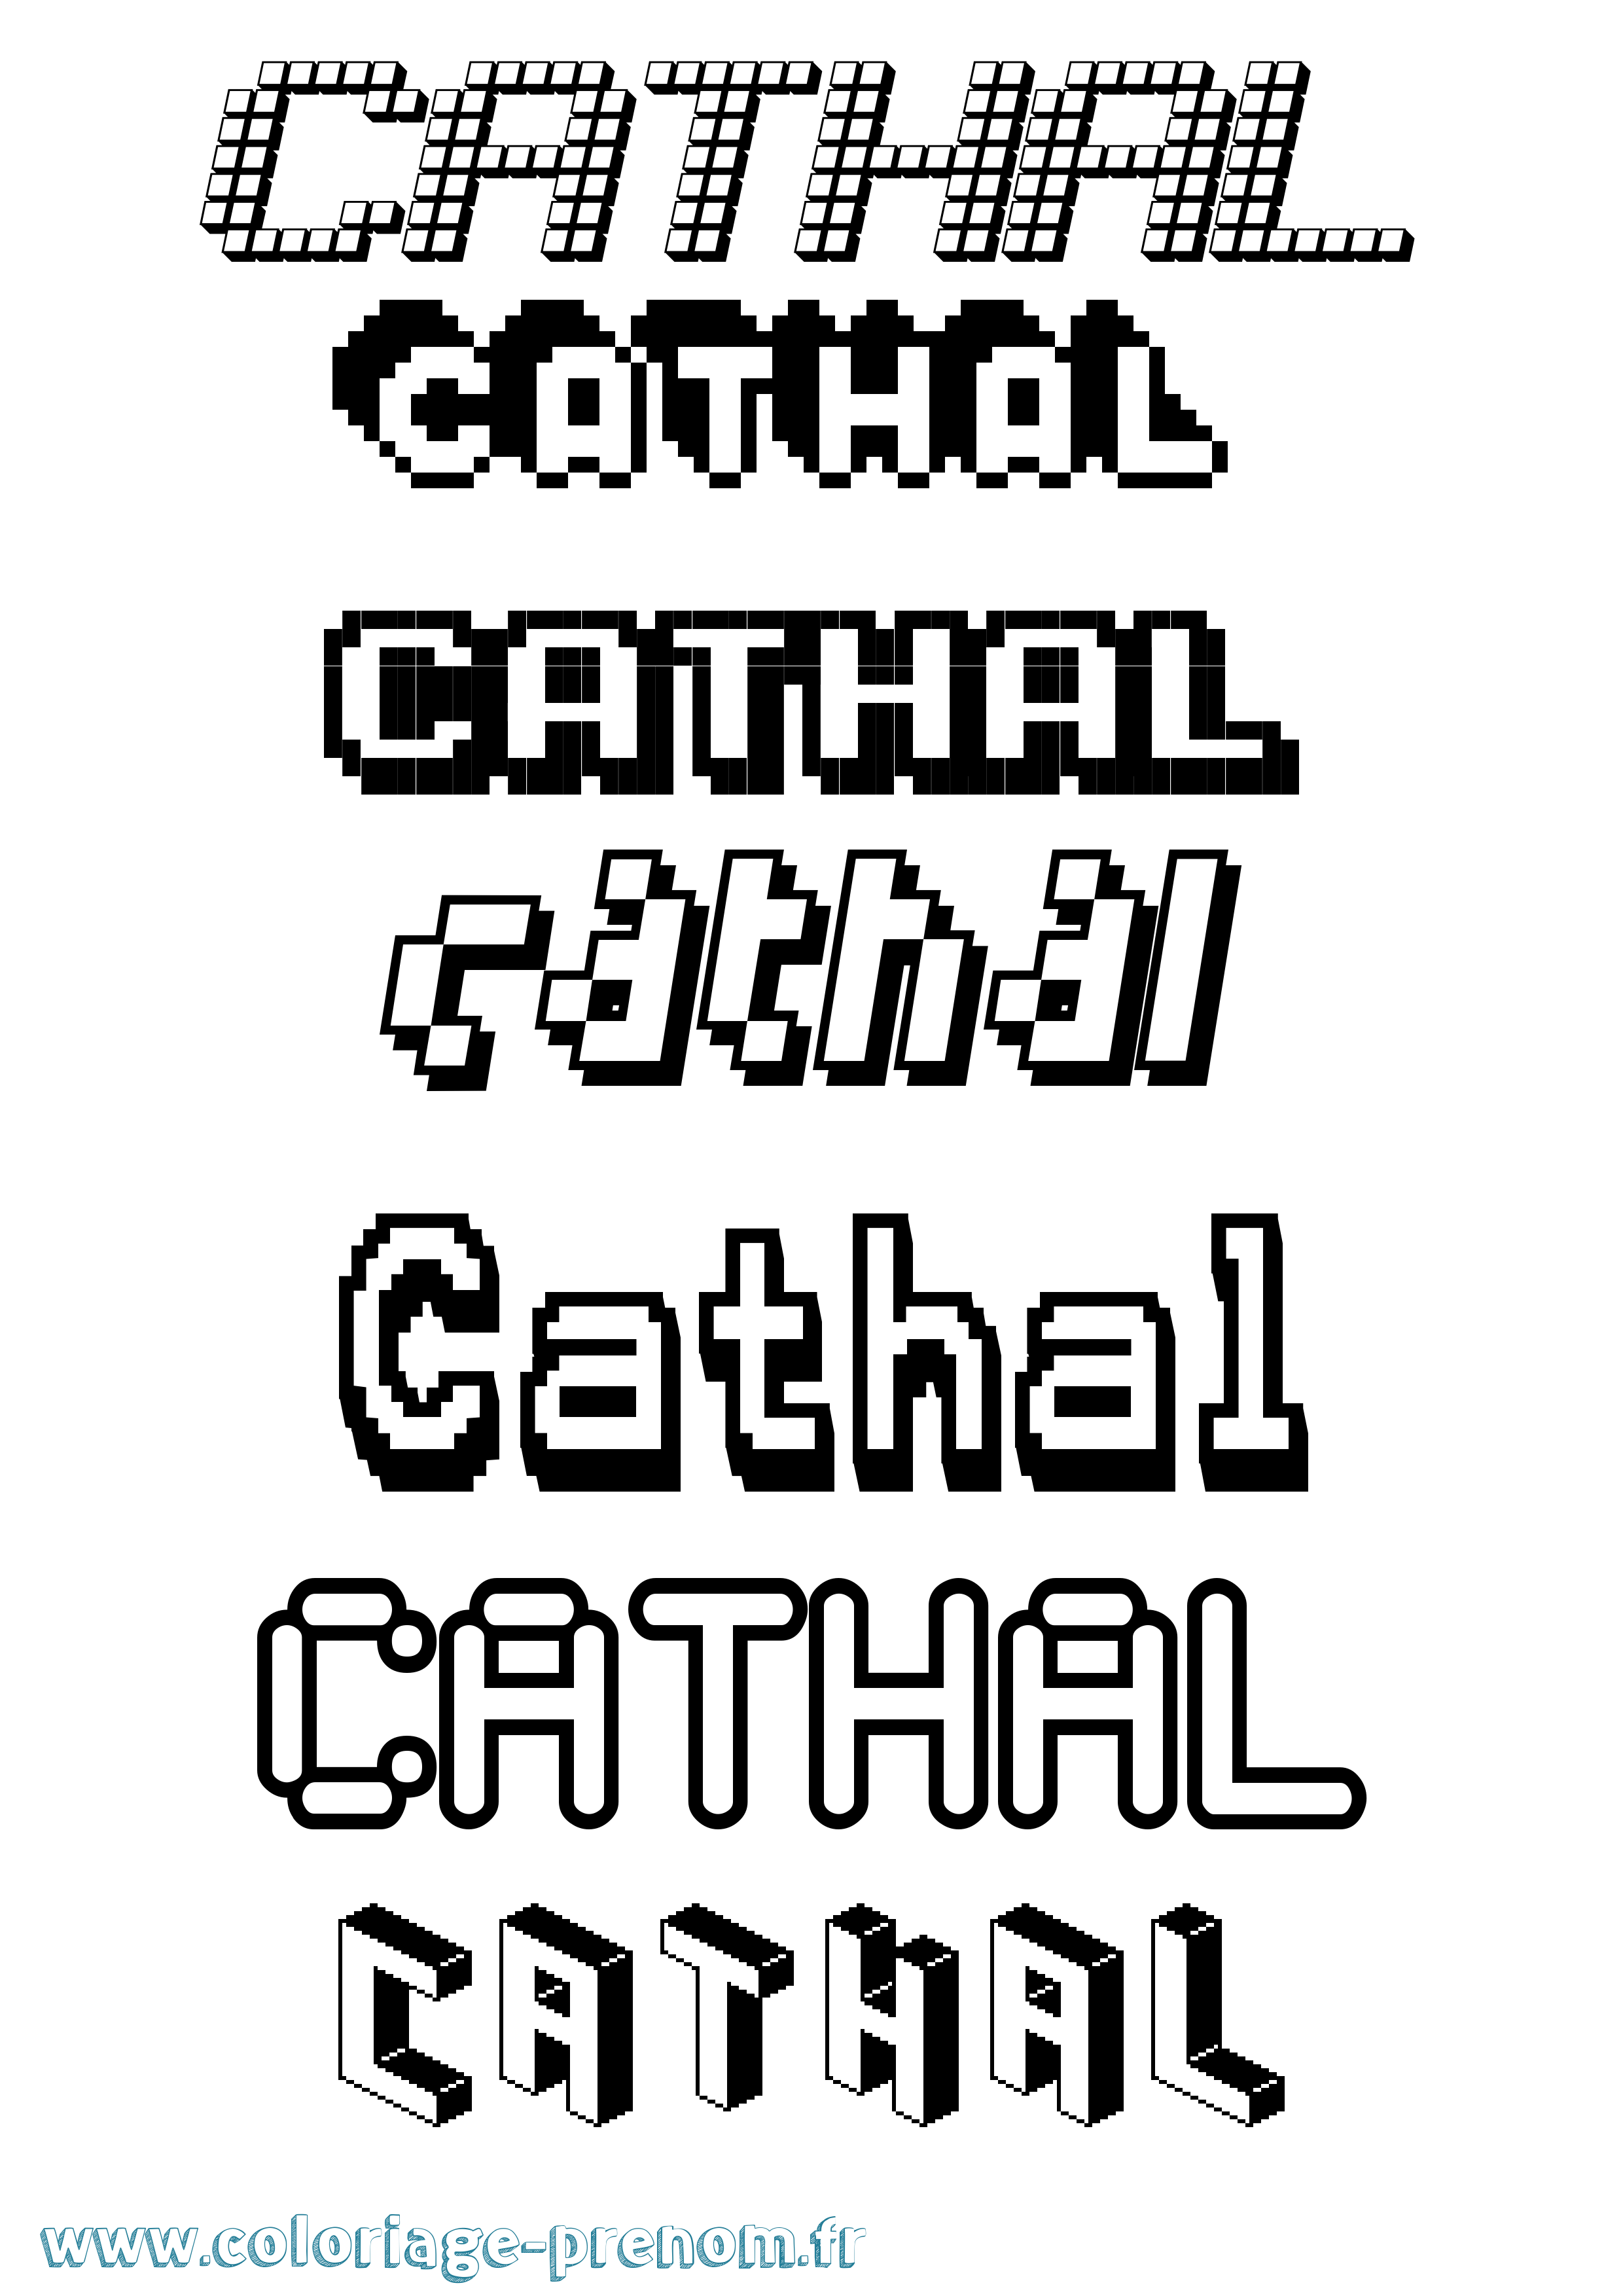 Coloriage prénom Cathal Pixel